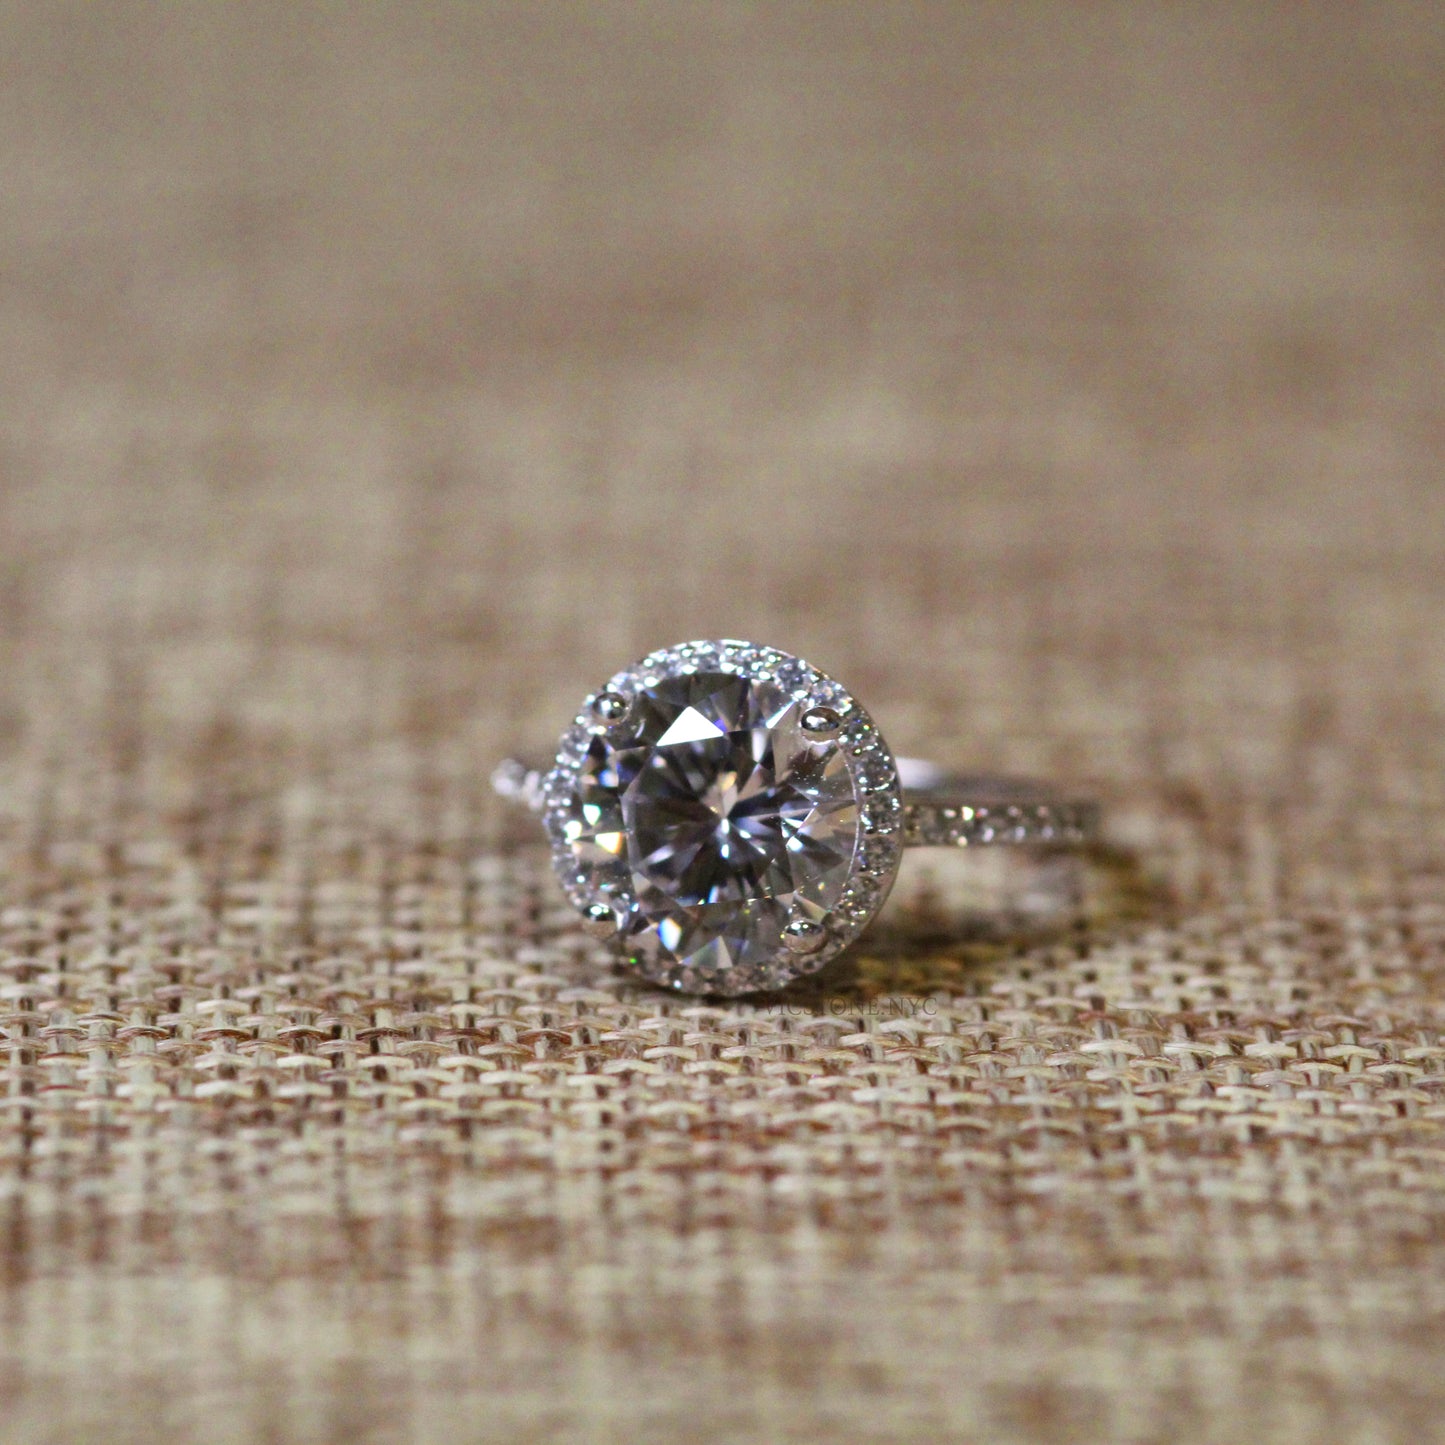 Halo Diamond Engagement Ring in Platinum